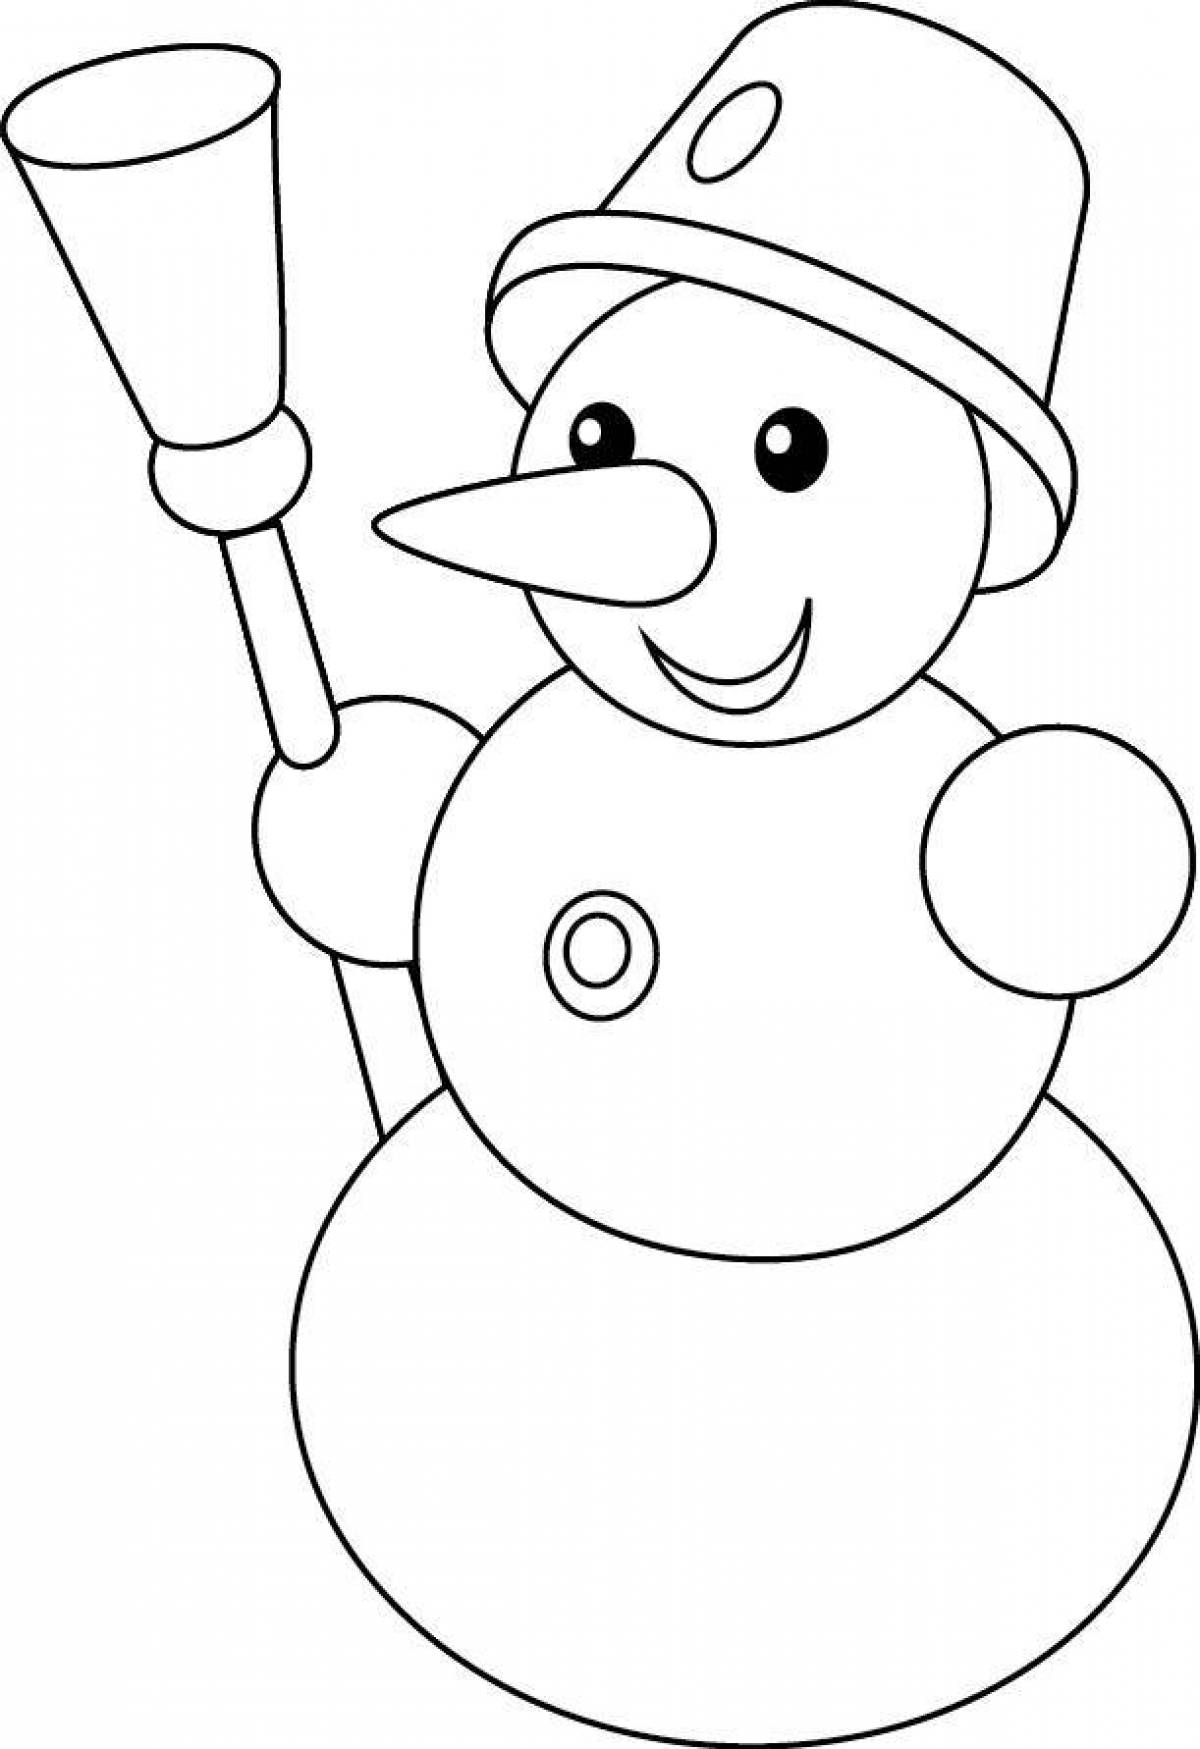 Веселая раскраска снеговик для детей 4-5 лет